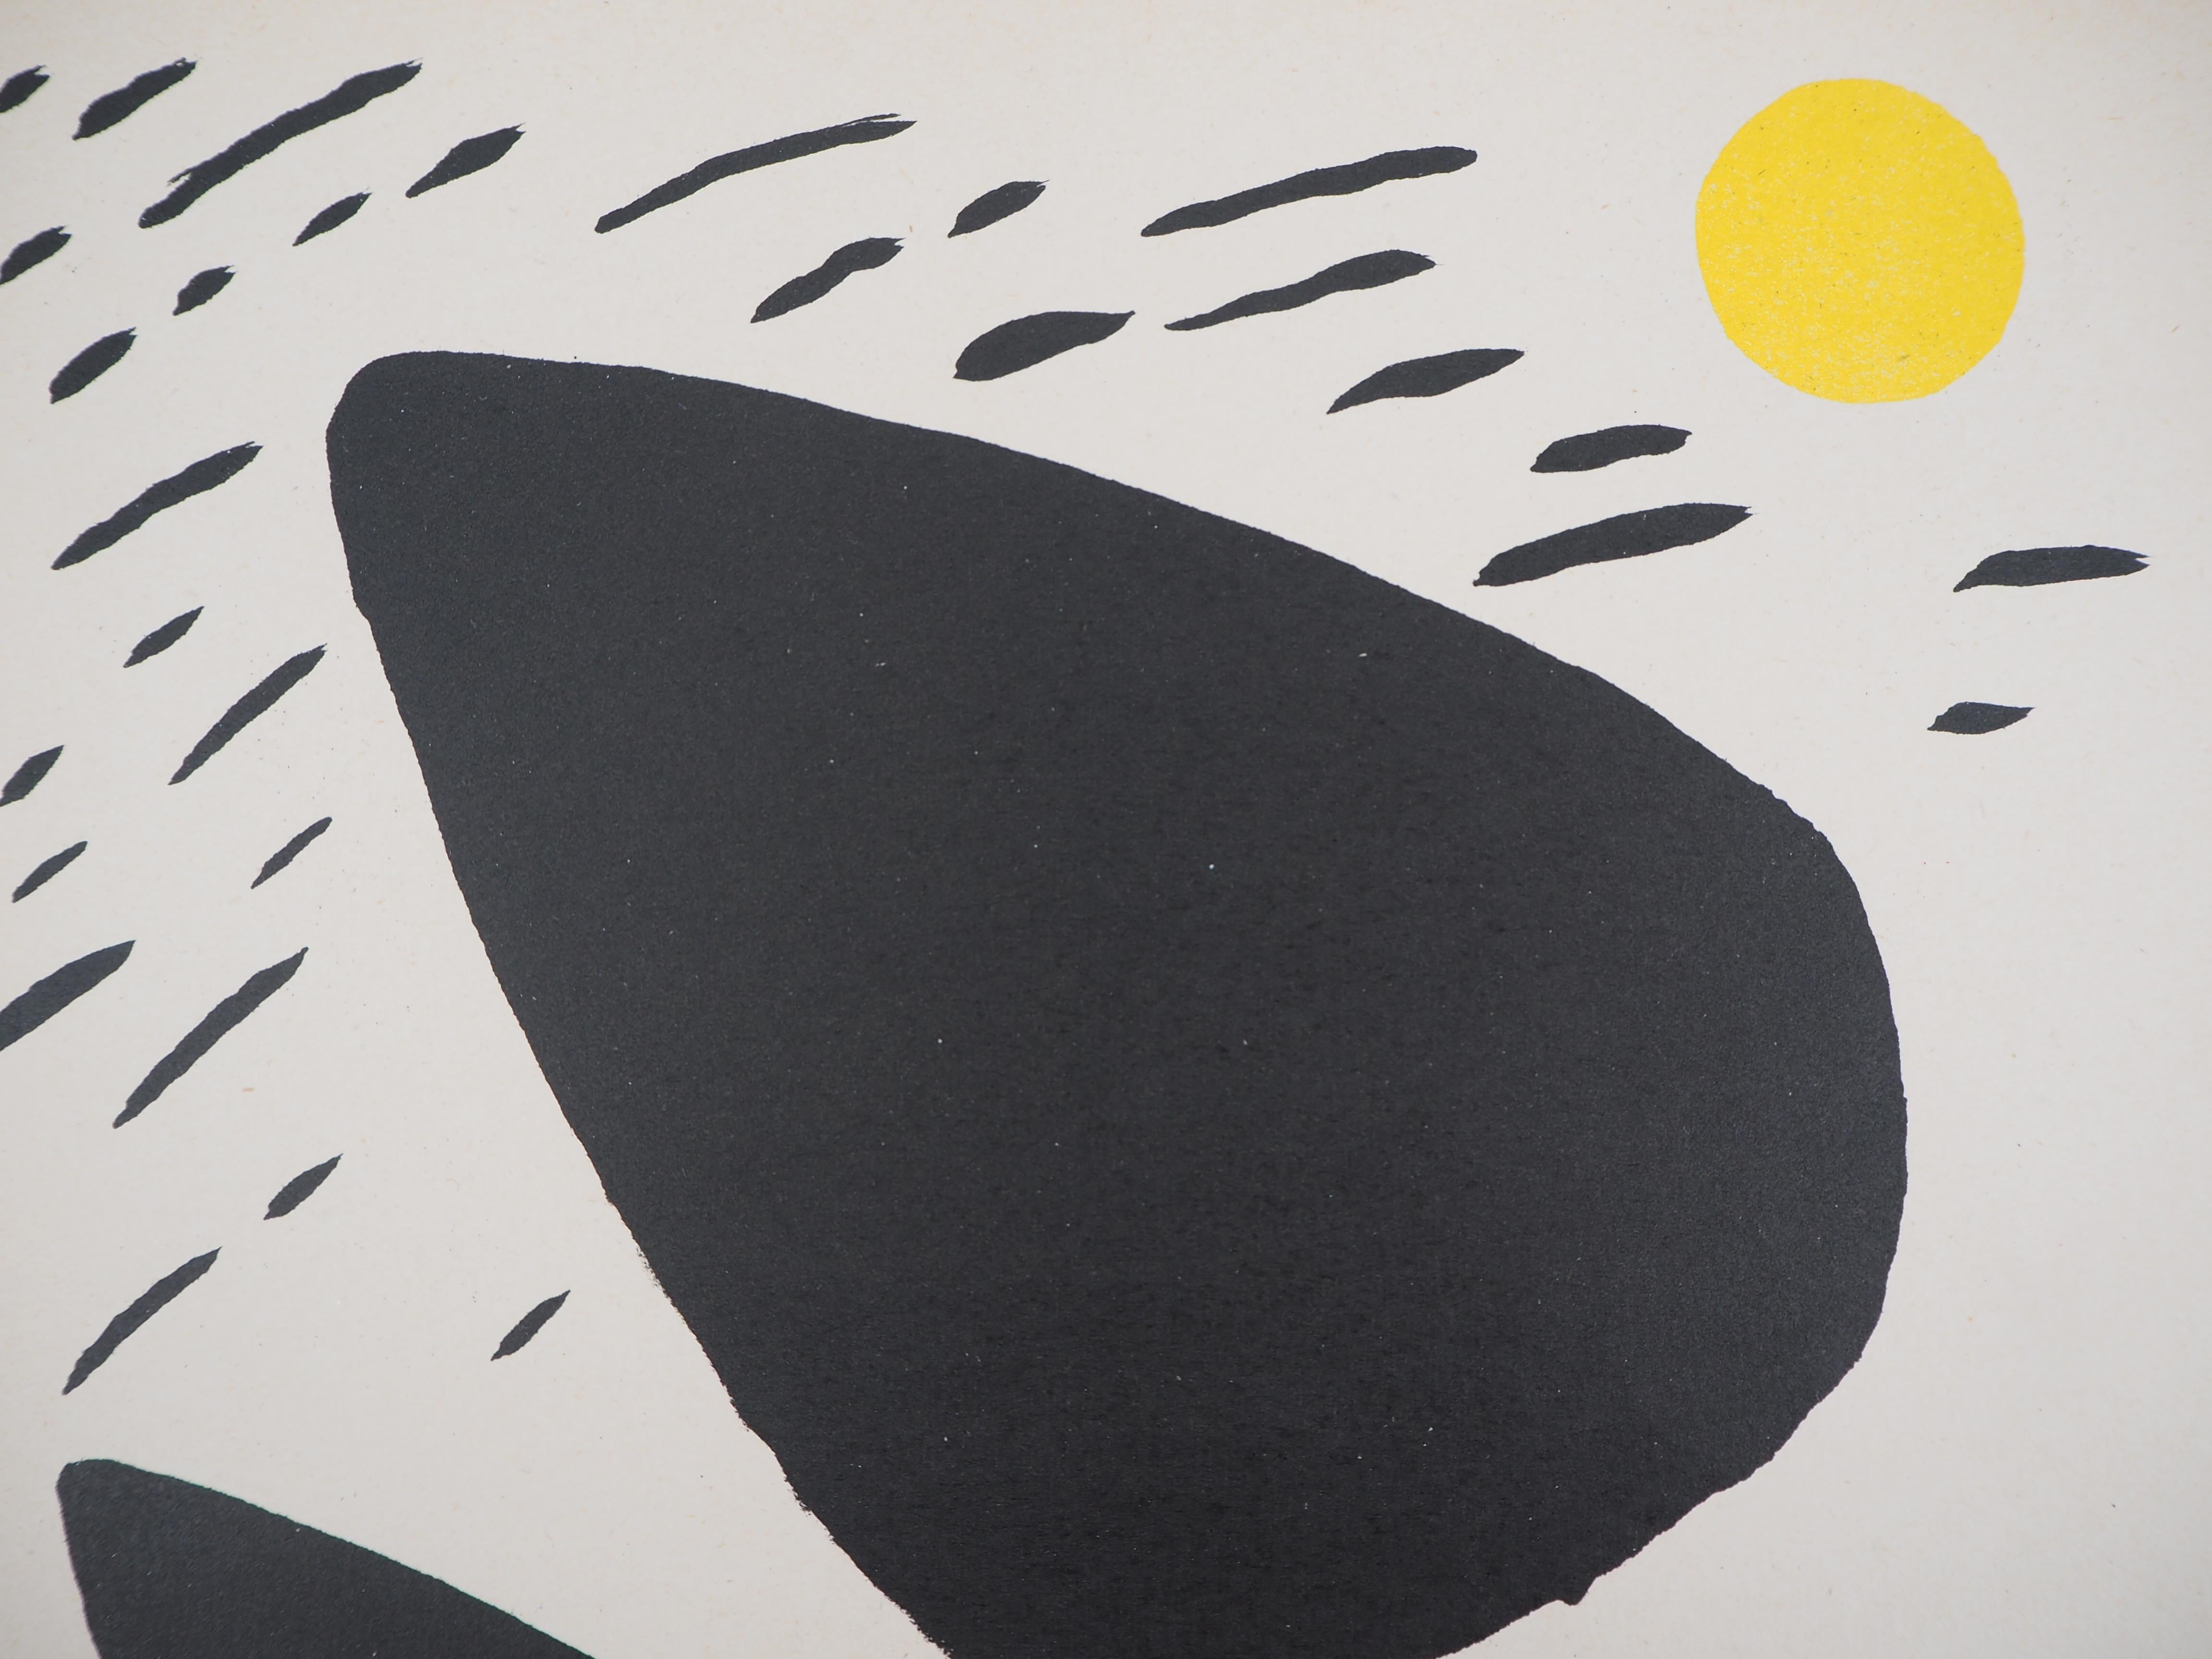 Rocks and Sun - Original lithograph - Mourlot, 1952 - American Modern Print by Alexander Calder